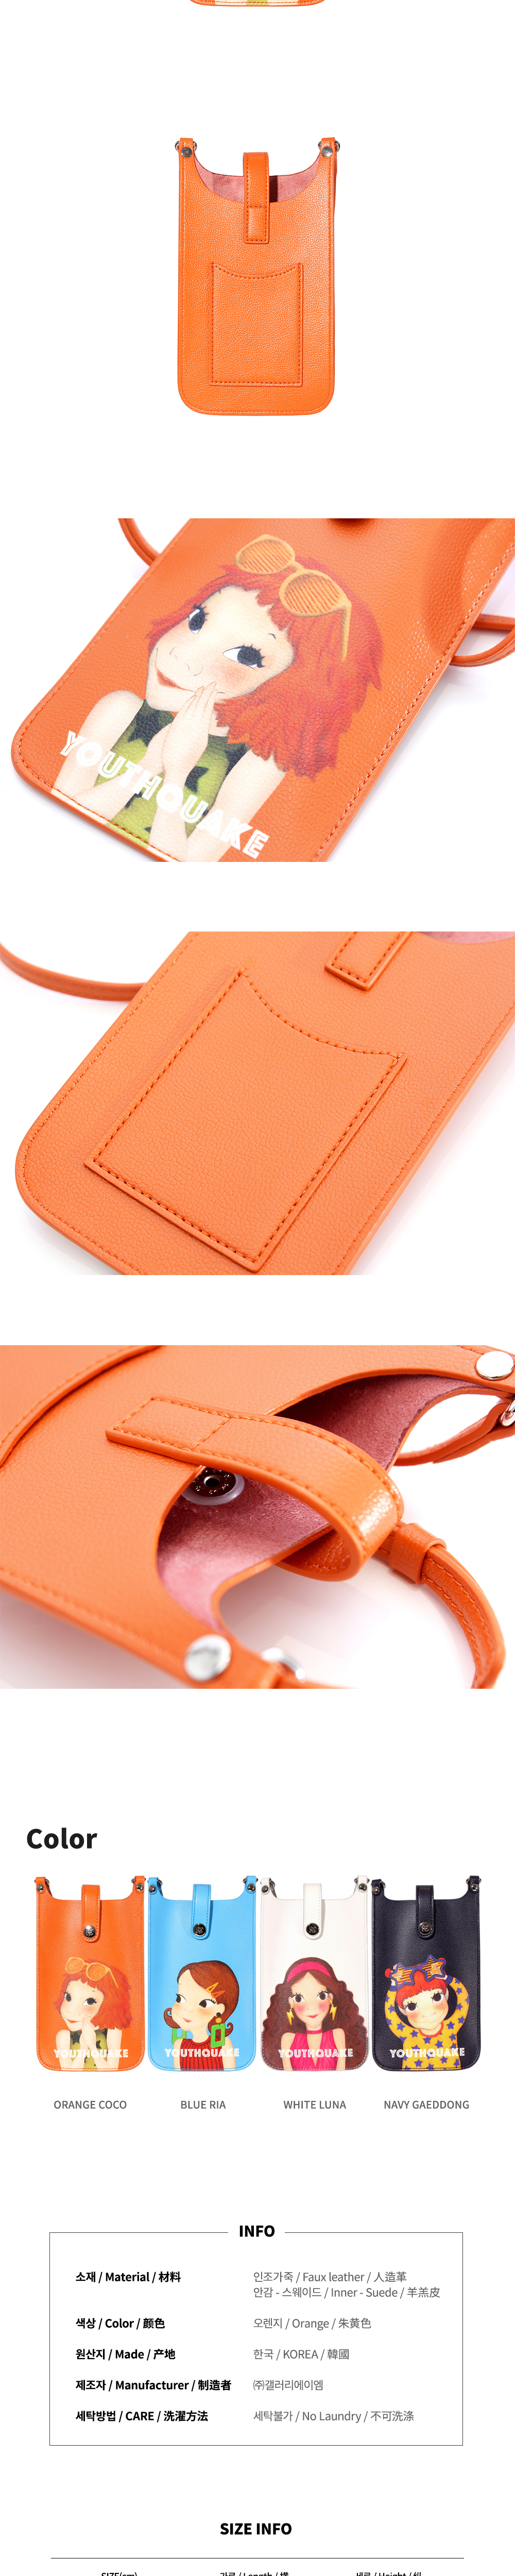 accessories peach color image-S1L1